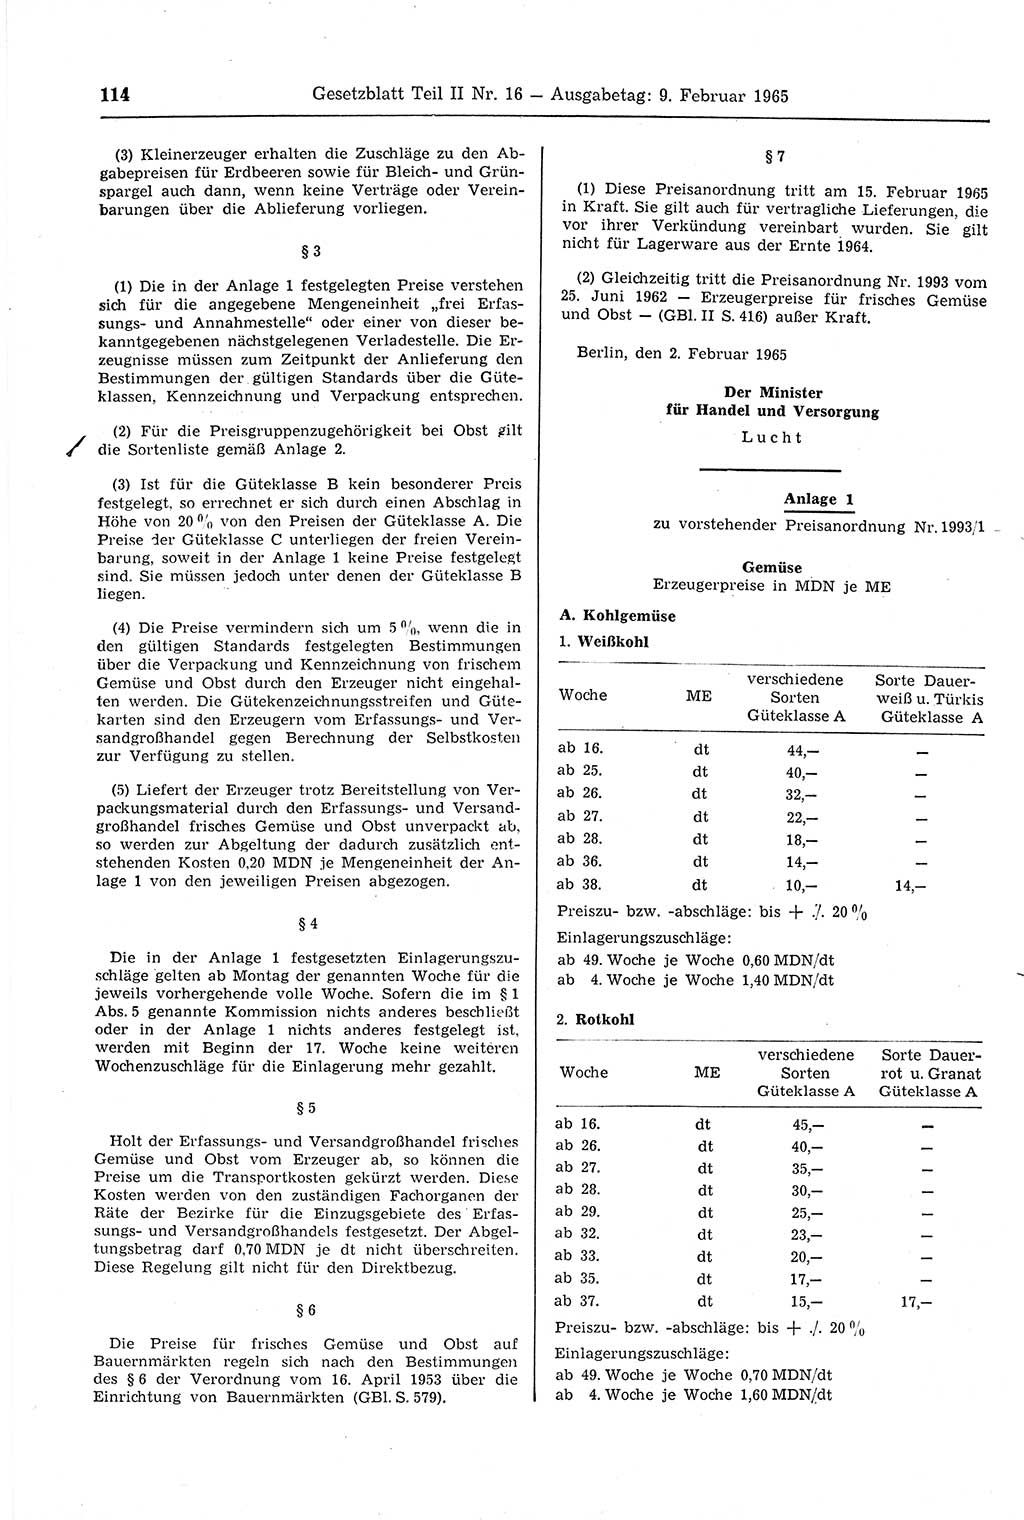 Gesetzblatt (GBl.) der Deutschen Demokratischen Republik (DDR) Teil ⅠⅠ 1965, Seite 114 (GBl. DDR ⅠⅠ 1965, S. 114)